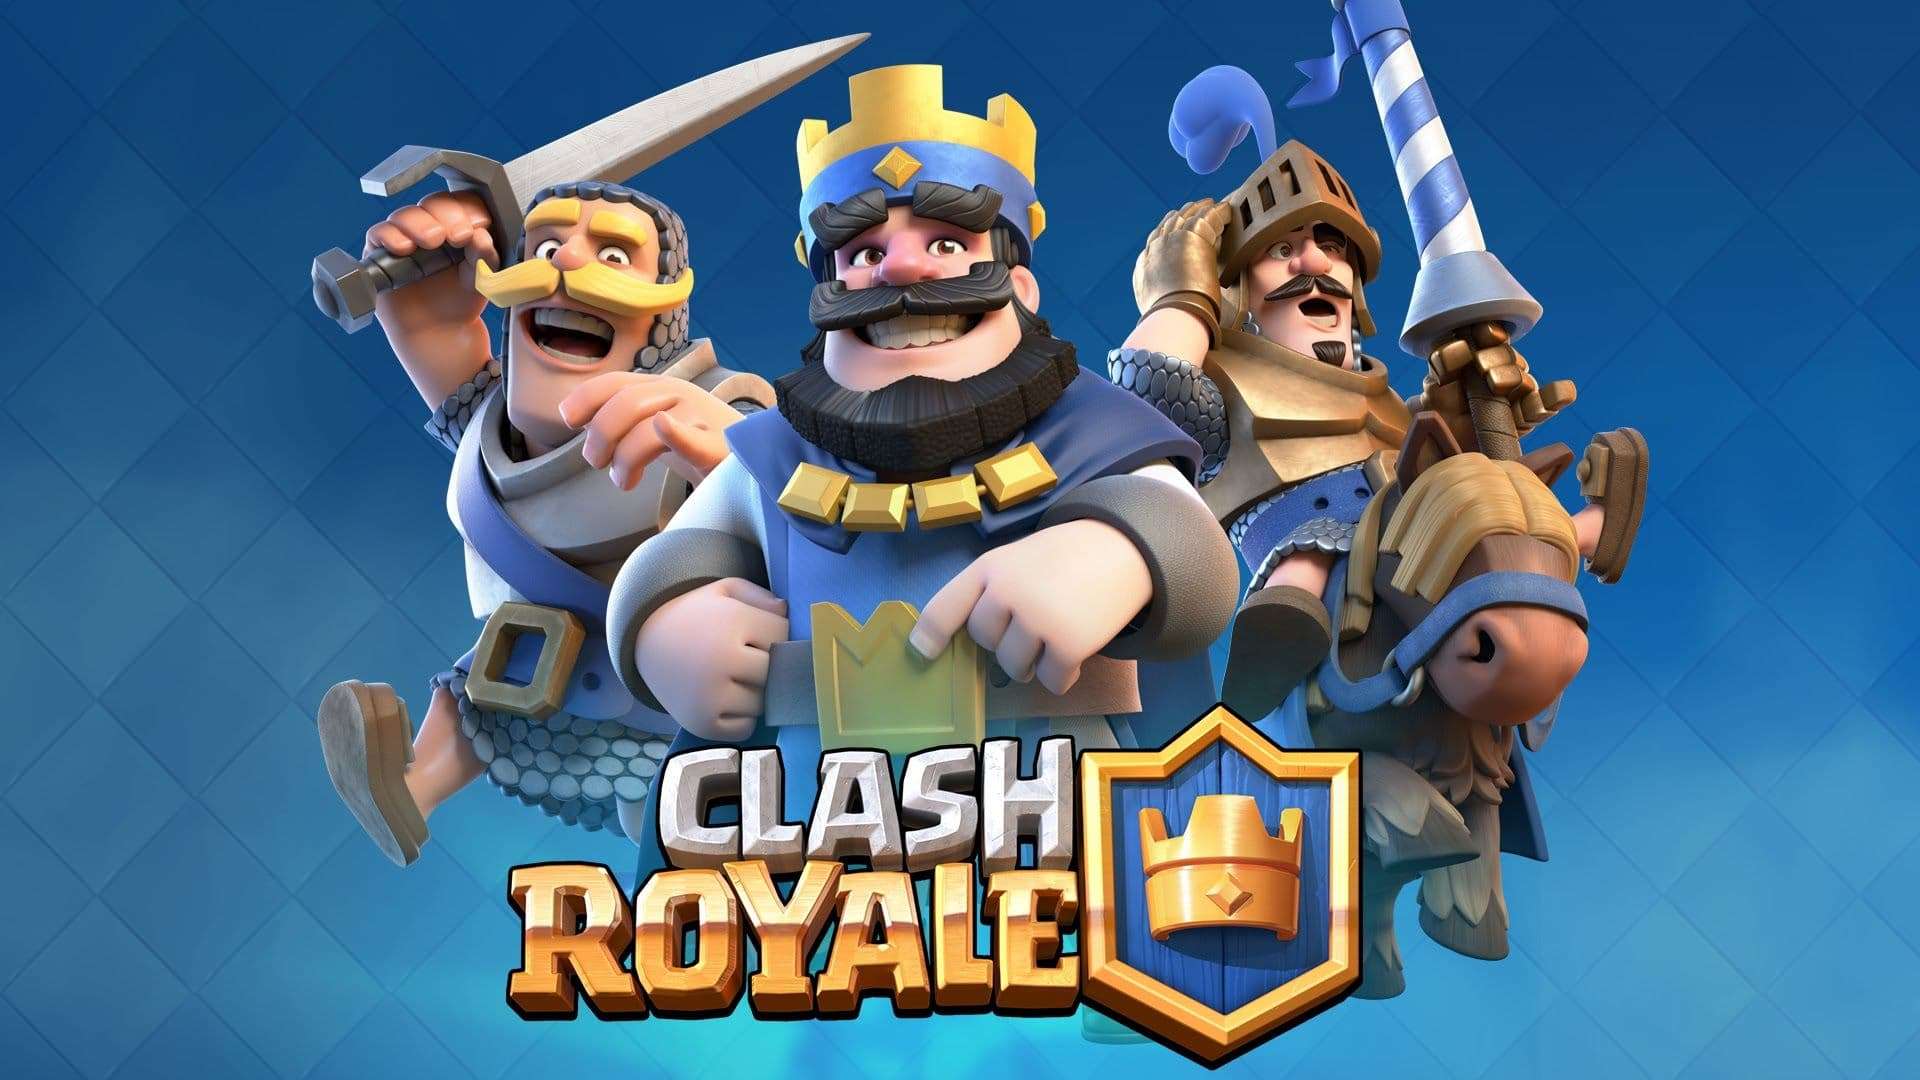 10 clash royale game concepts that make no sense 5